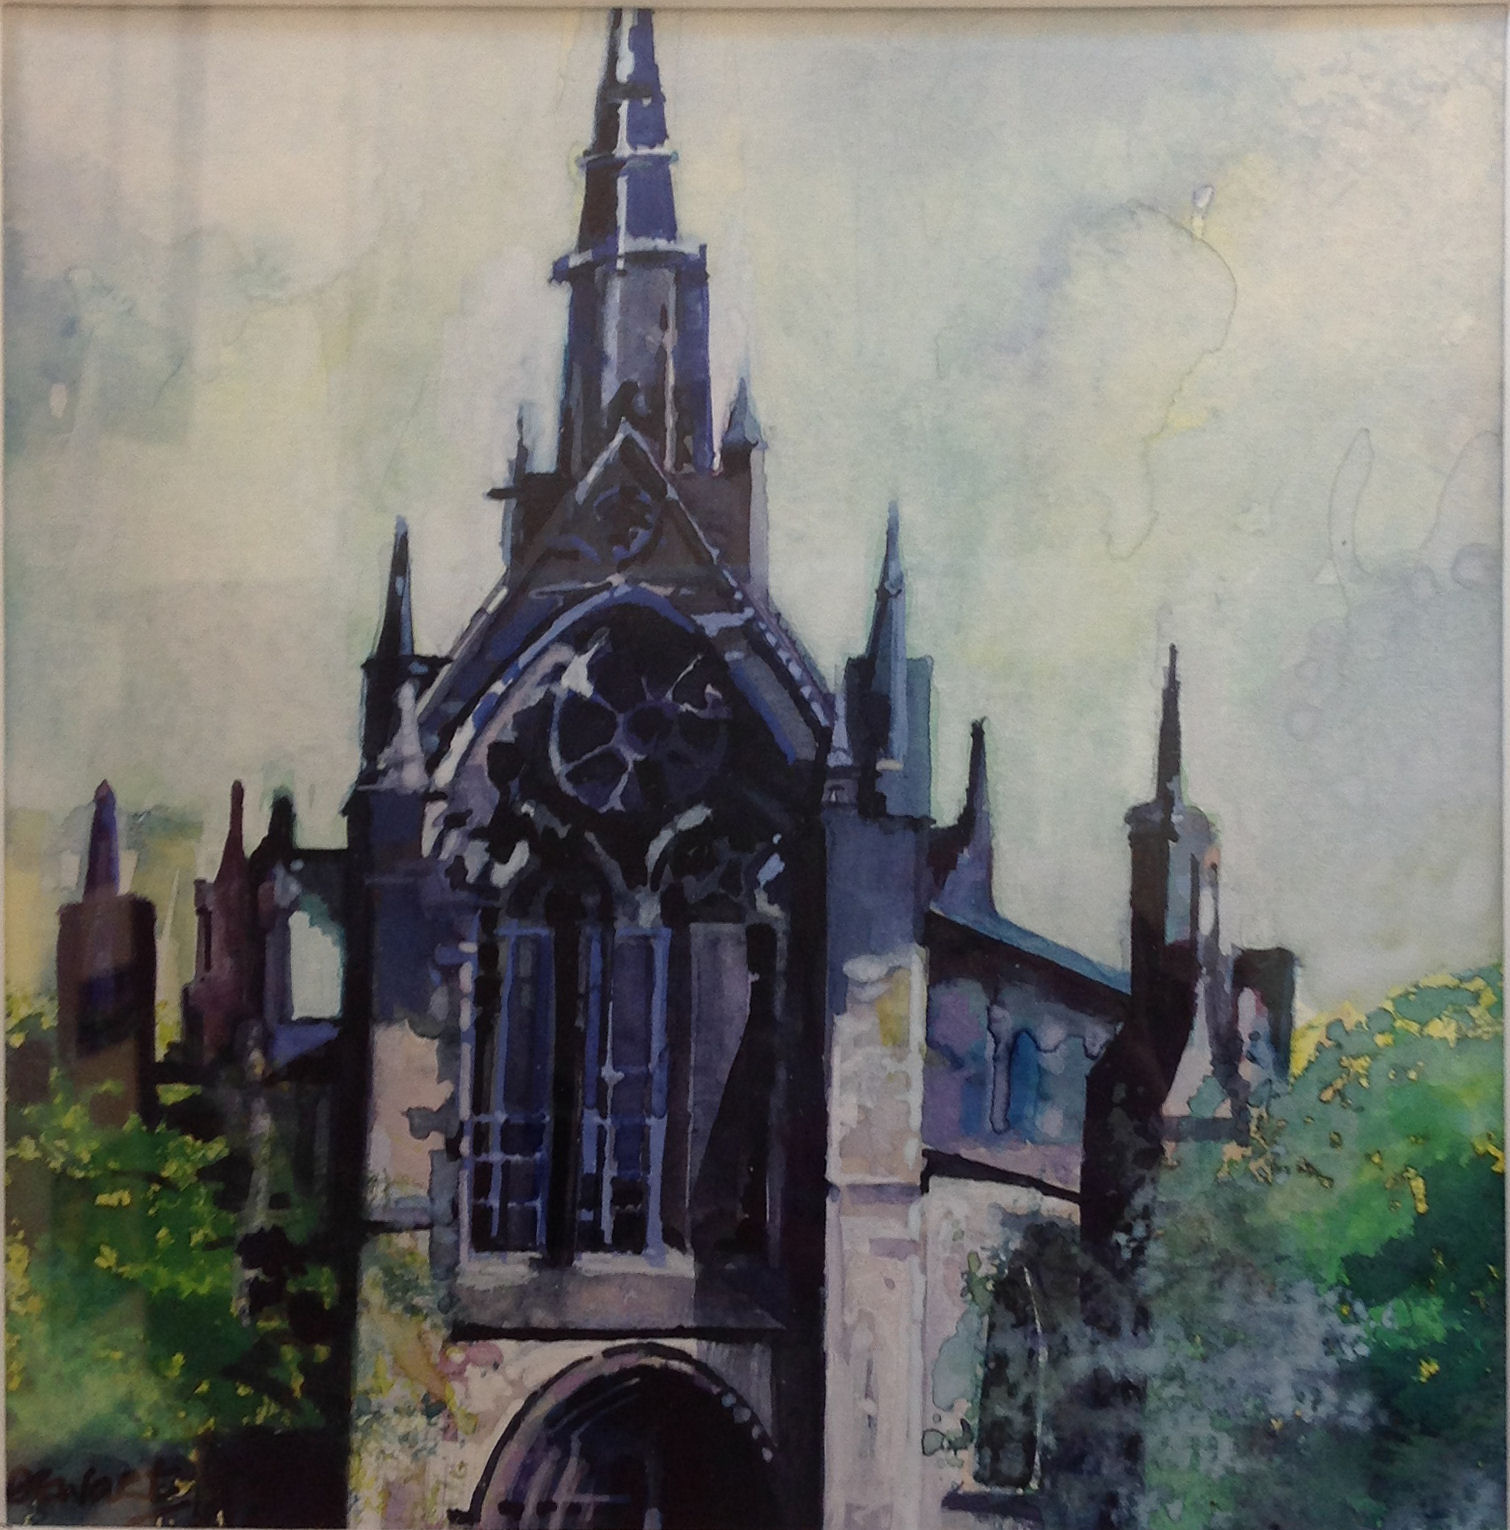 'Glasgow Cathedral' by artist Carol Dewart